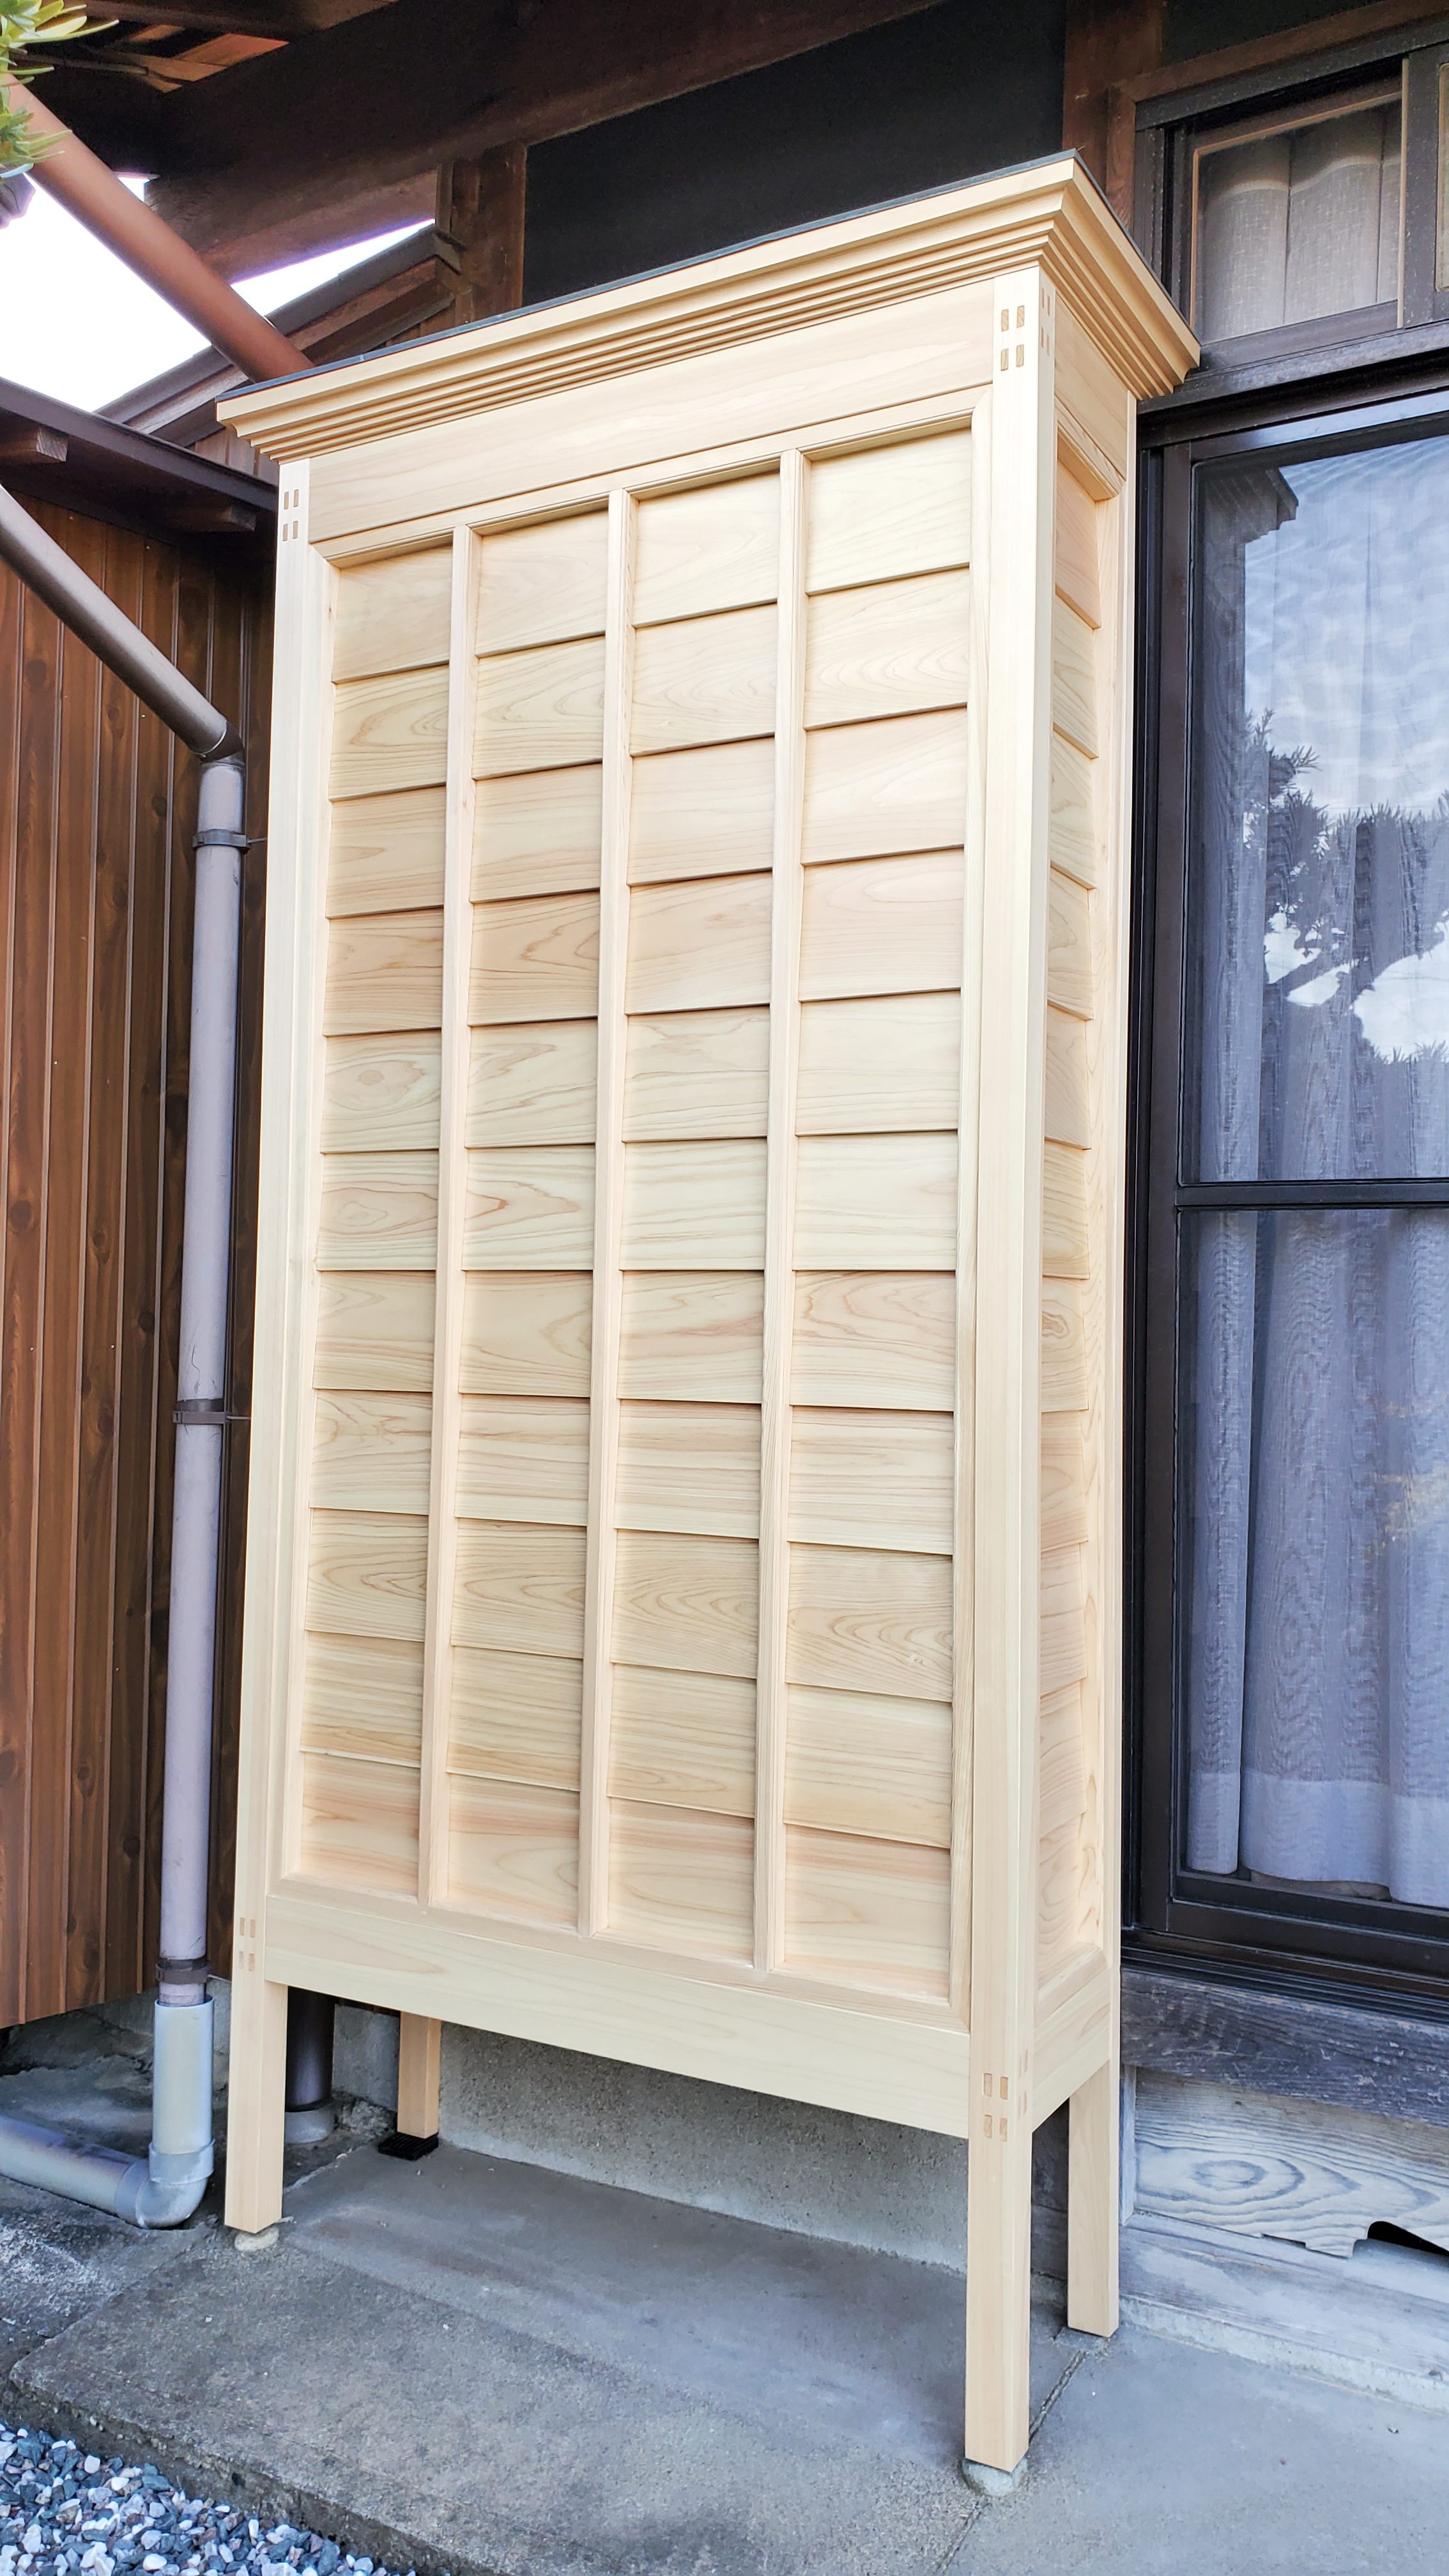 和風建築の玄関と木製戸箱の改修工事 - マルト後藤建設株式会社